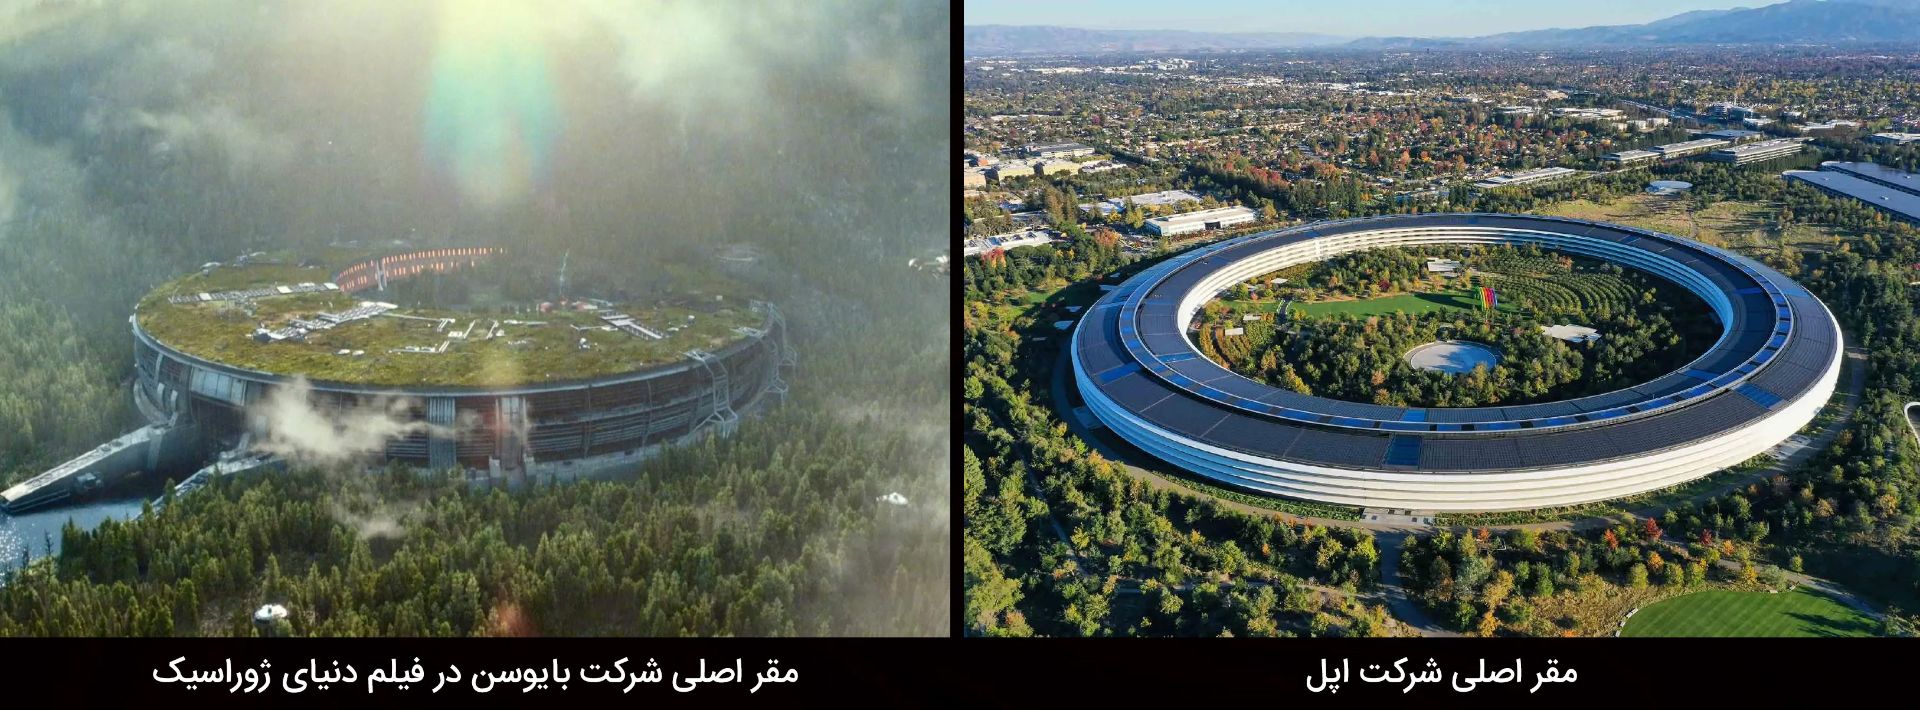 مقایسه اپل پارک و مقر شرکت بایوسن در فیلم Jurassic World: Dominion